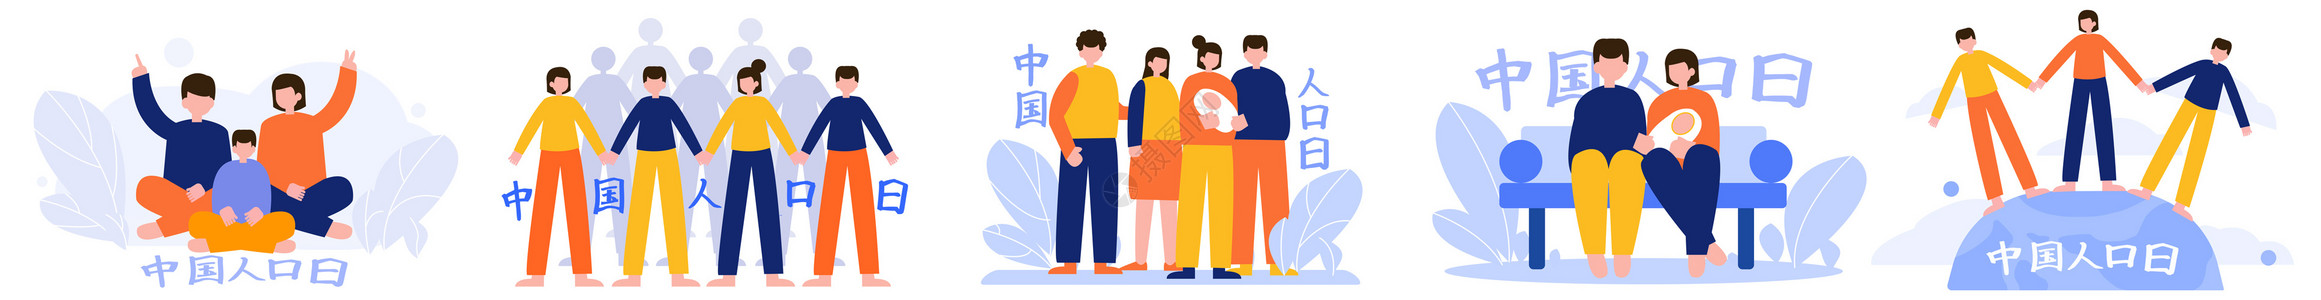 大众评审中国人口日社会家庭多人人物场景插图插画